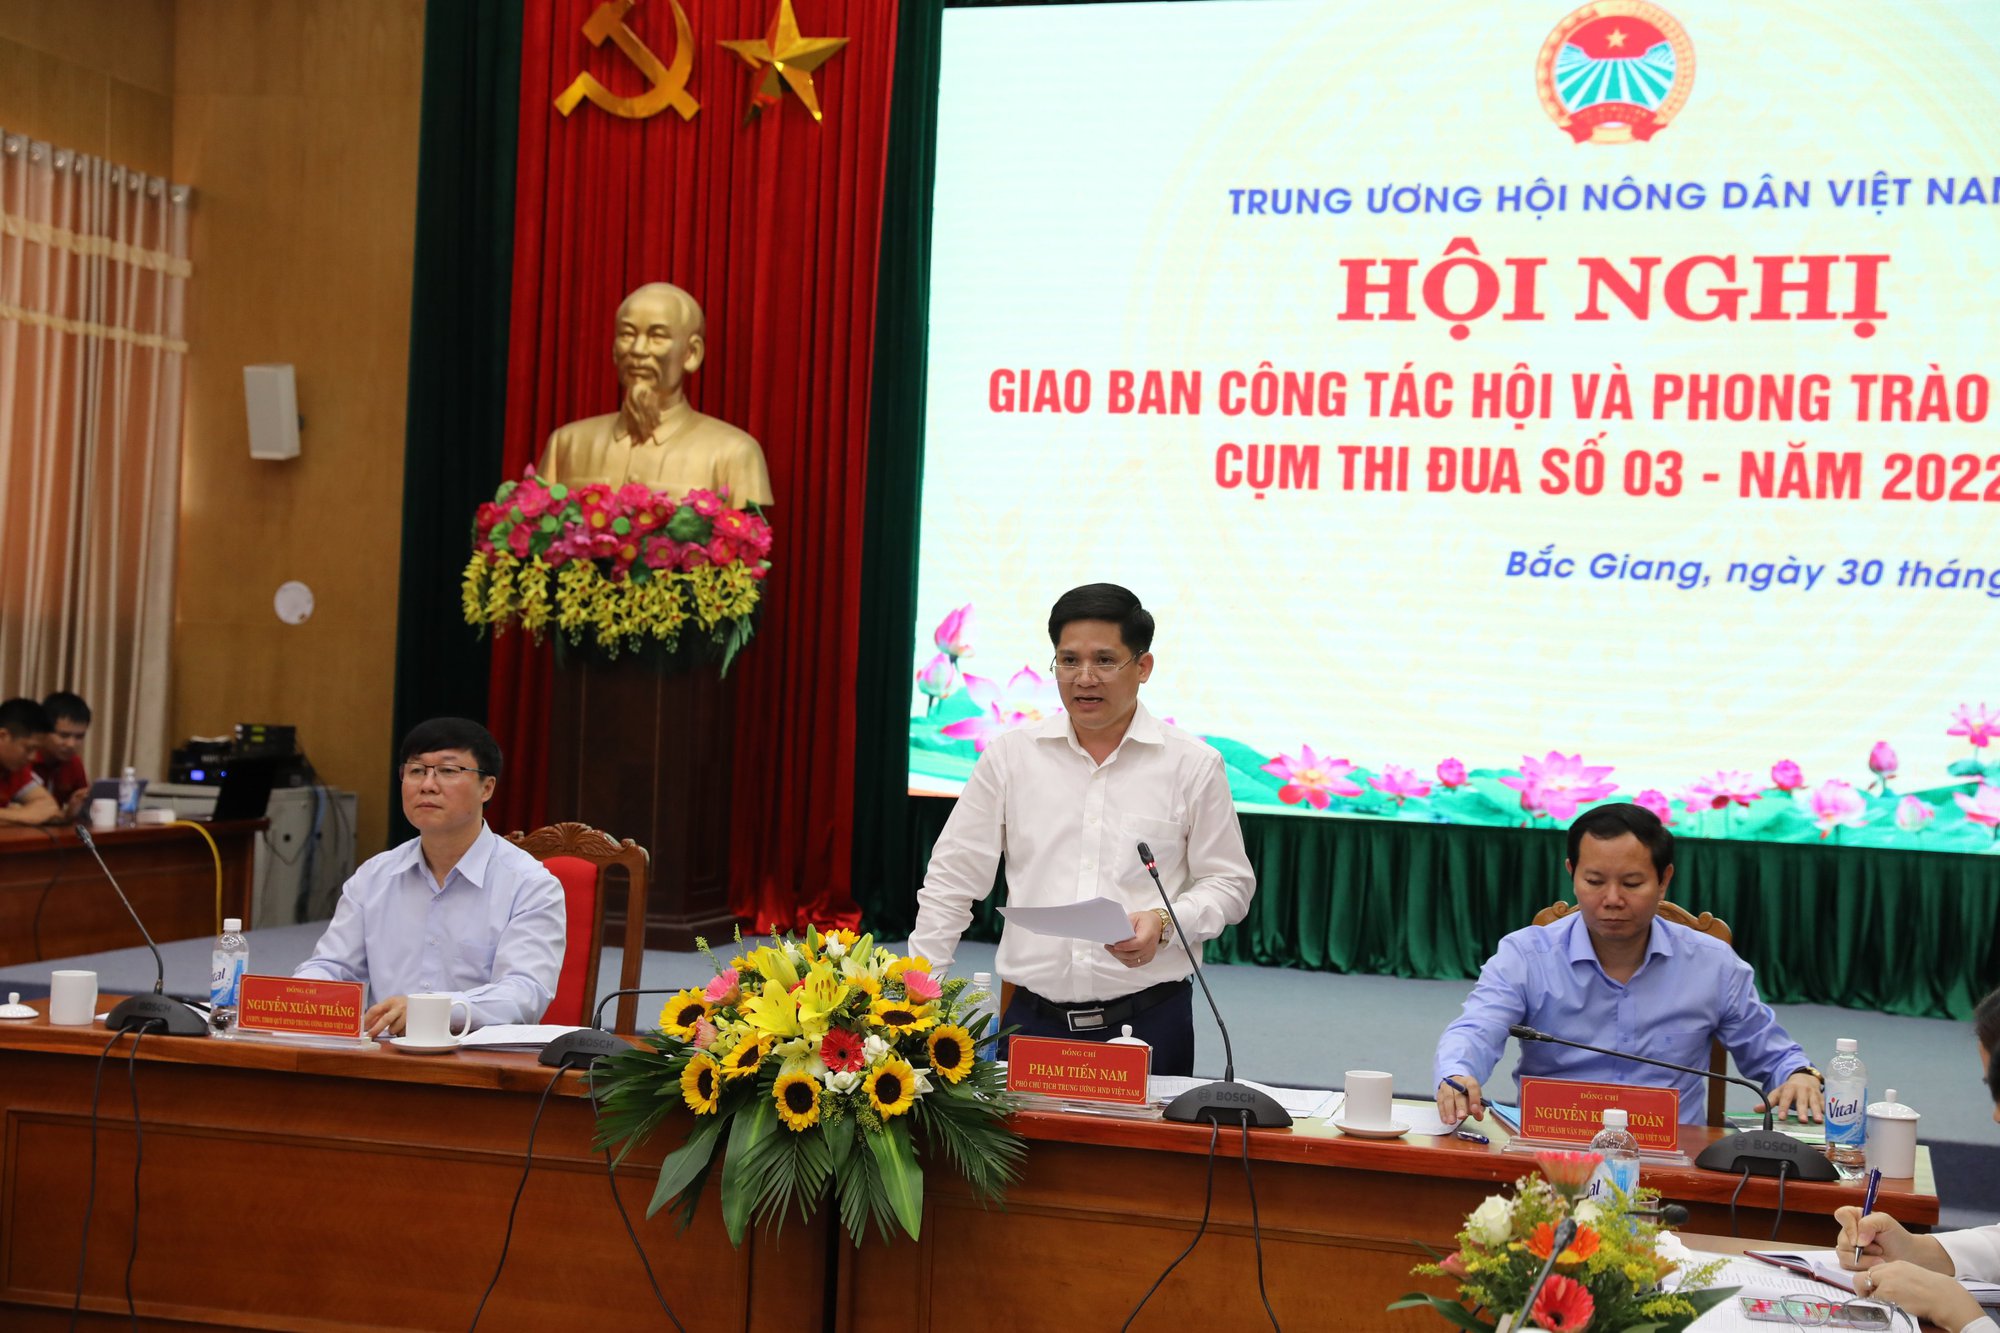 Phó Chủ tịch Thường trực Hội NDVN Phạm Tiến Nam chủ trì Hội nghị giao ban Cụm thi đua số 3 - Ảnh 7.